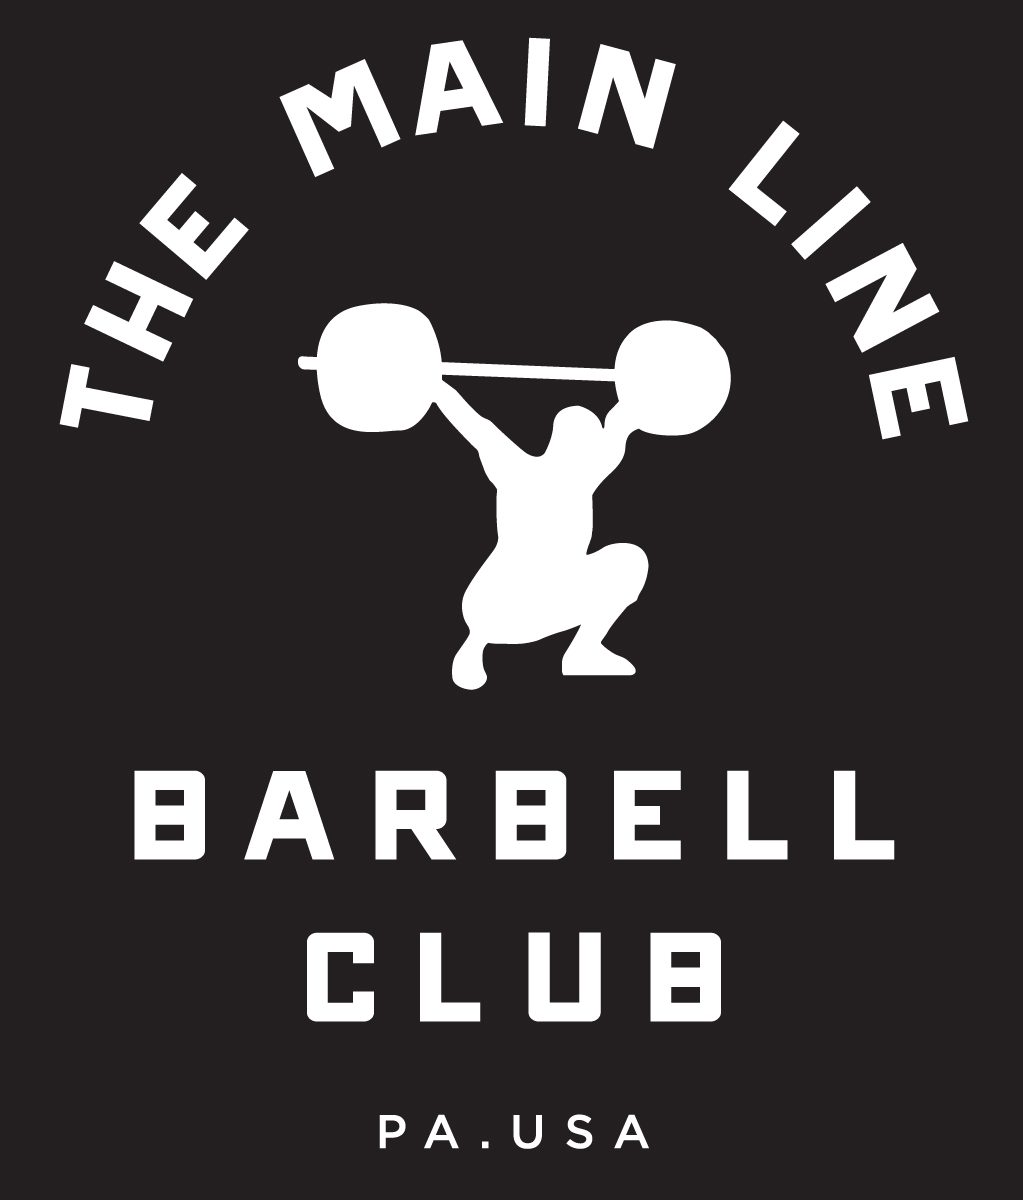 Week of 6.27.16 Barbell Club